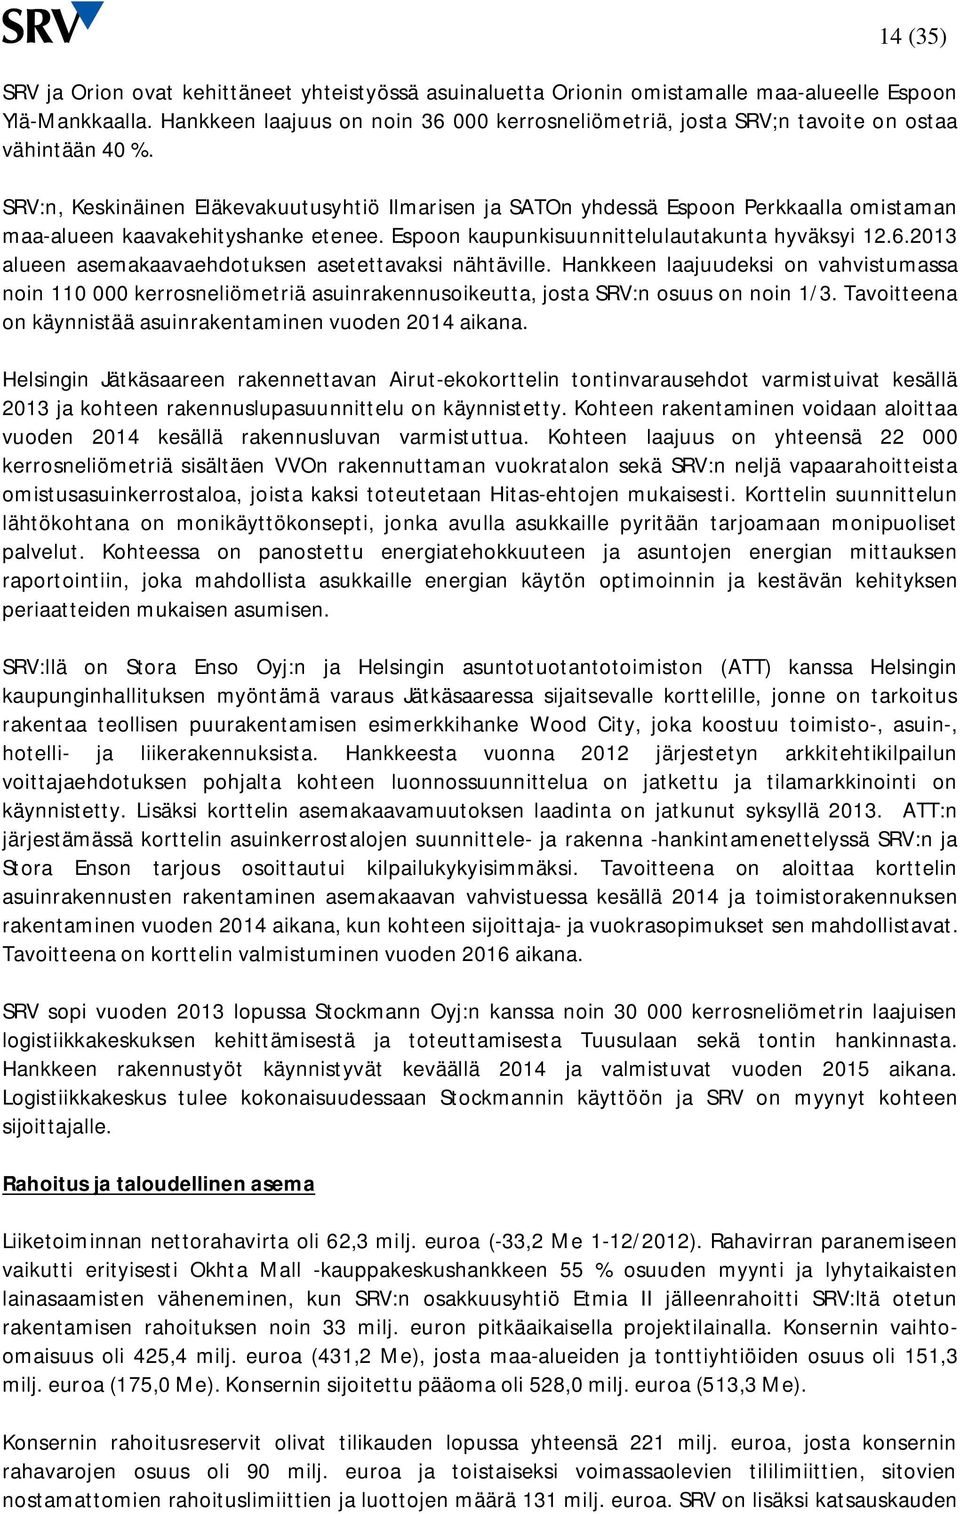 SRV:n, Keskinäinen Eläkevakuutusyhtiö Ilmarisen ja SATOn yhdessä Espoon Perkkaalla omistaman maa-alueen kaavakehityshanke etenee. Espoon kaupunkisuunnittelulautakunta hyväksyi 12.6.